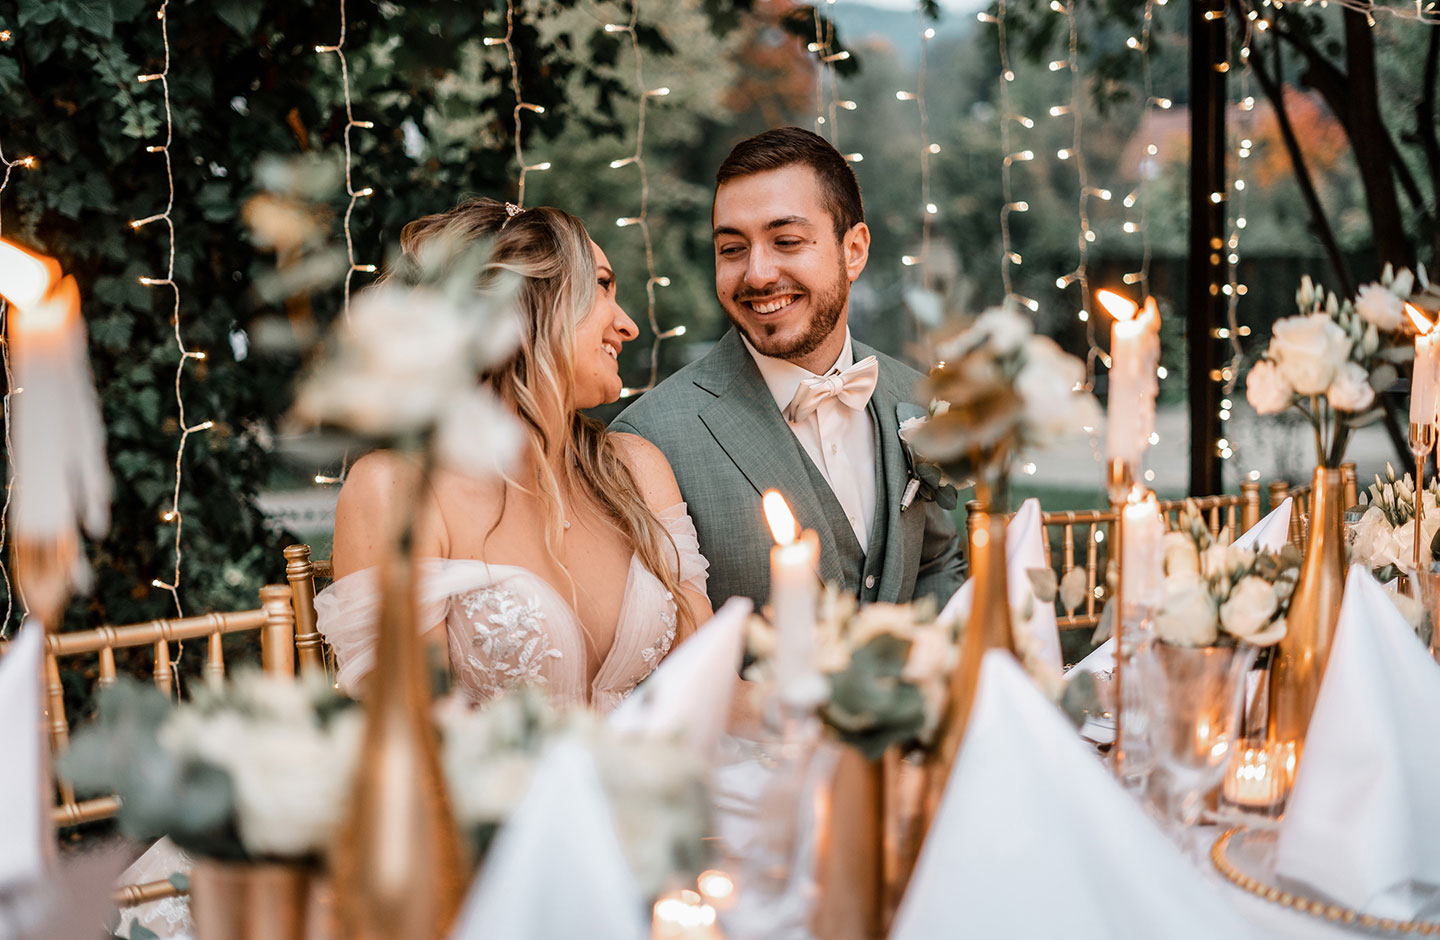  Das Hochzeitspaar aus einer Braut mit einem cremefarbenen, verspielten Kleid und ihrem Bräutigam mit einem grauen Anzug mit cremefarbener Fliege, schaut sich verliebt an. Die beiden sitzen an der liebevoll hergerichteten Hochzeitstafel.